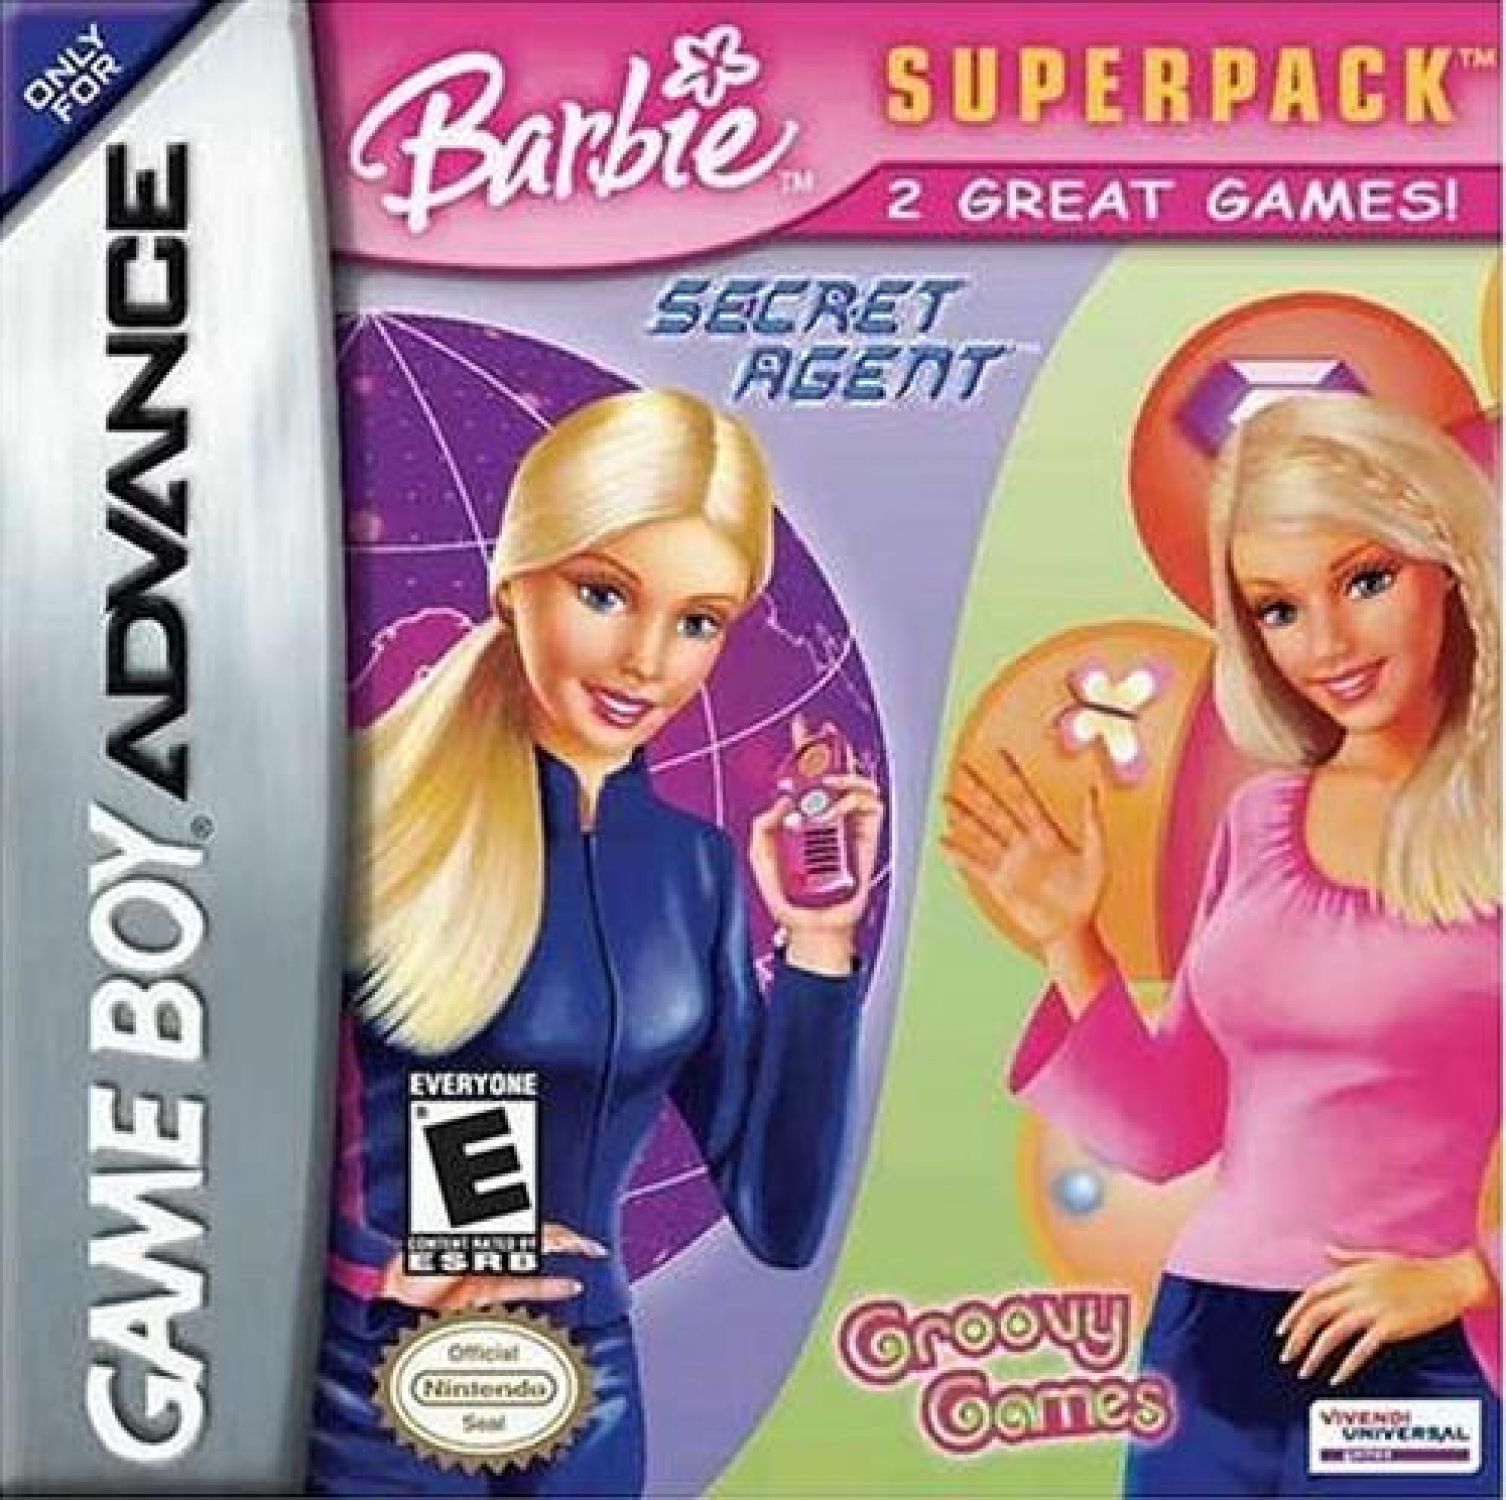 Сборник игр 2. Barbie Superpack игра. Барби тайный агент игра. Фирма 1с игры Барби. Сборник игр для девочек.